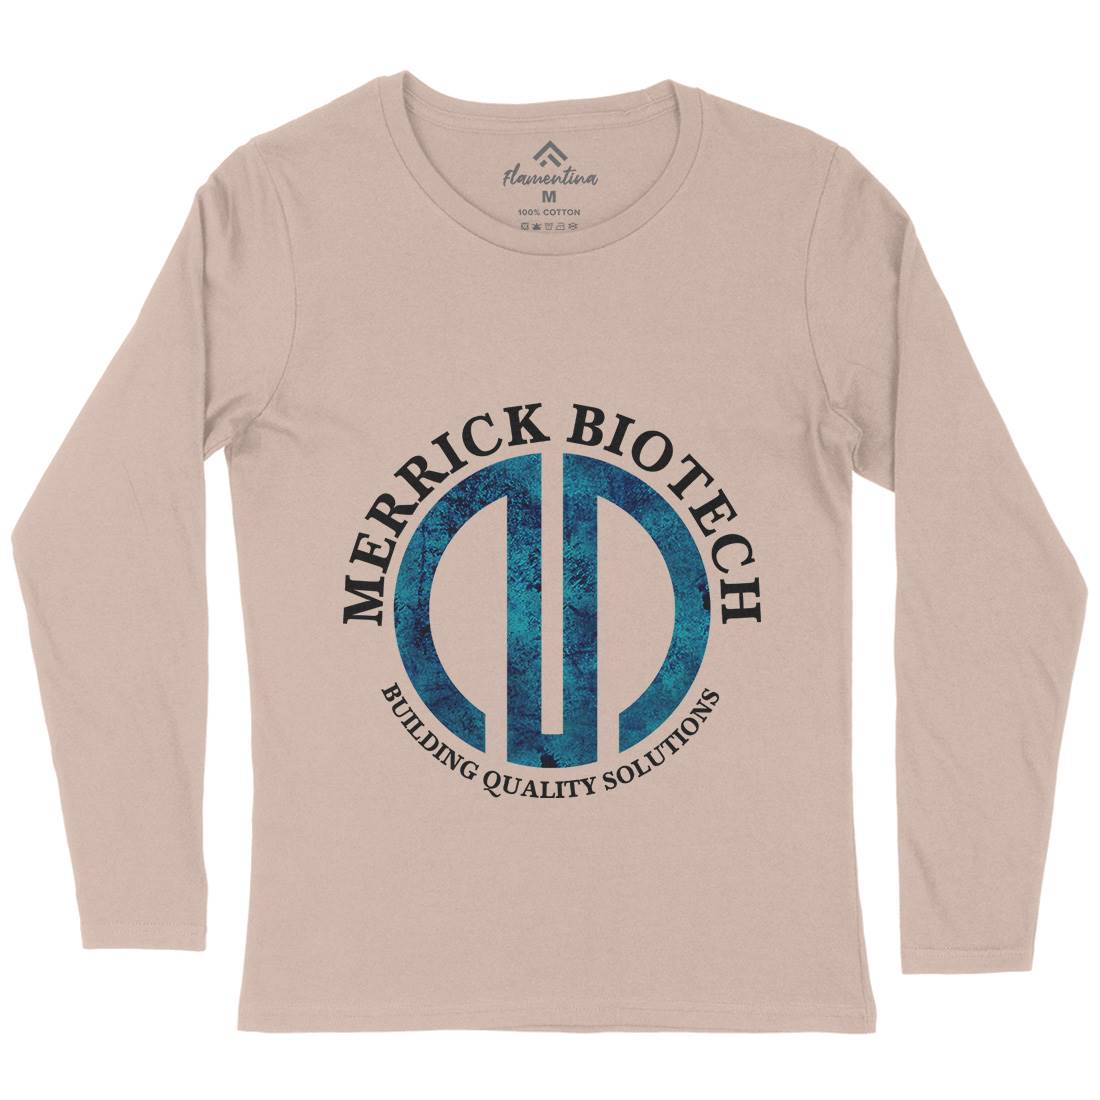 Merrick Biotech Womens Long Sleeve T-Shirt Space D393